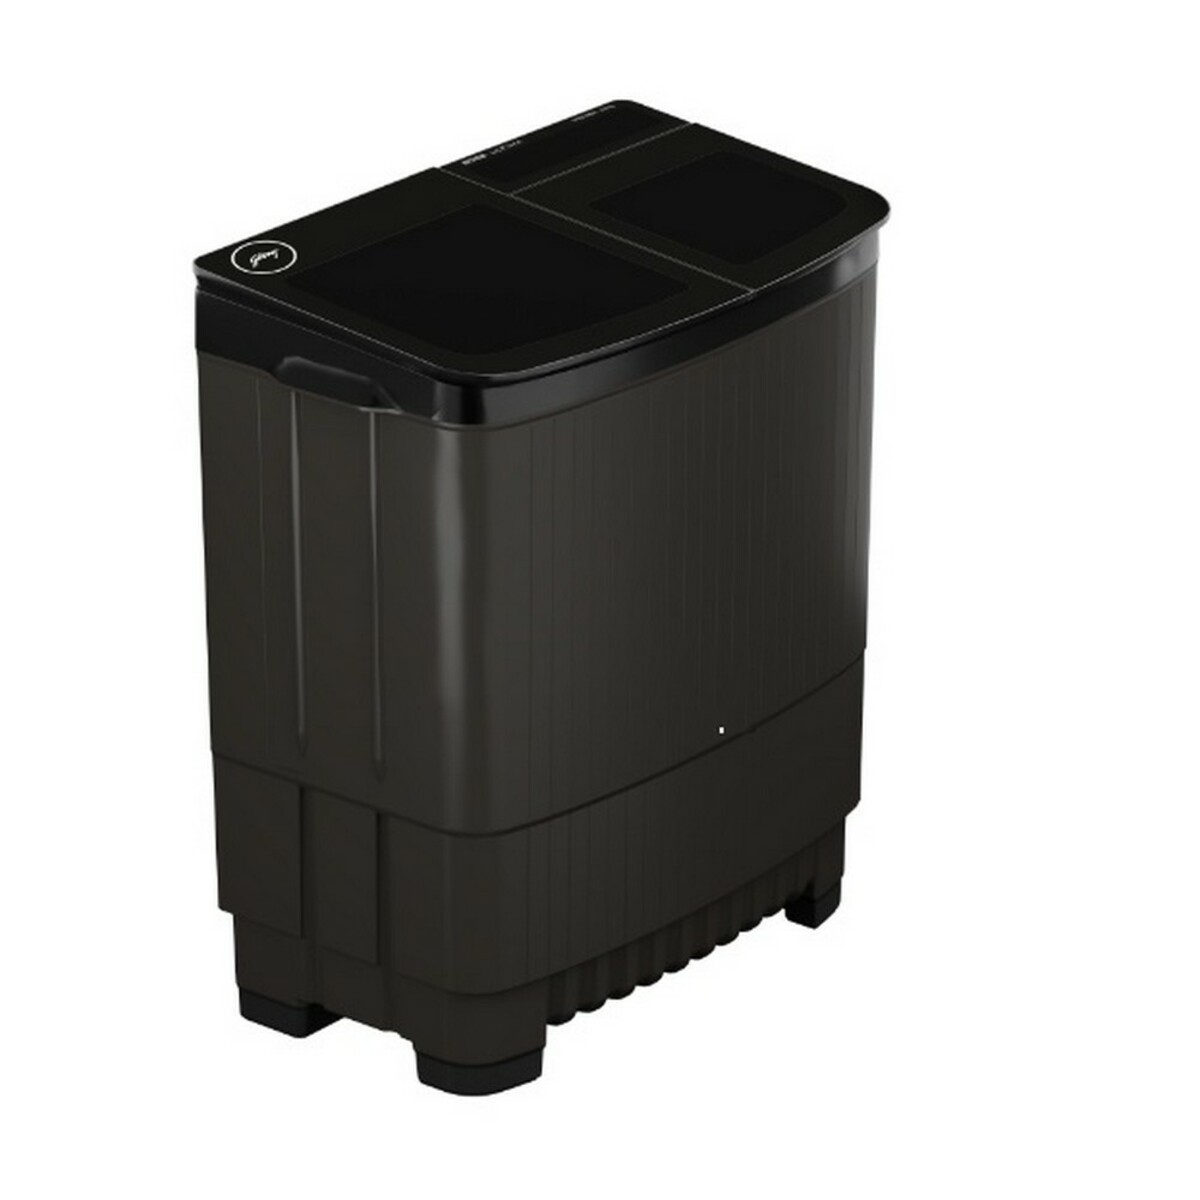 Godrej Semi-automatic washing Machine WS EDGE ULTS 805.0 DB2M CSGR 8kg